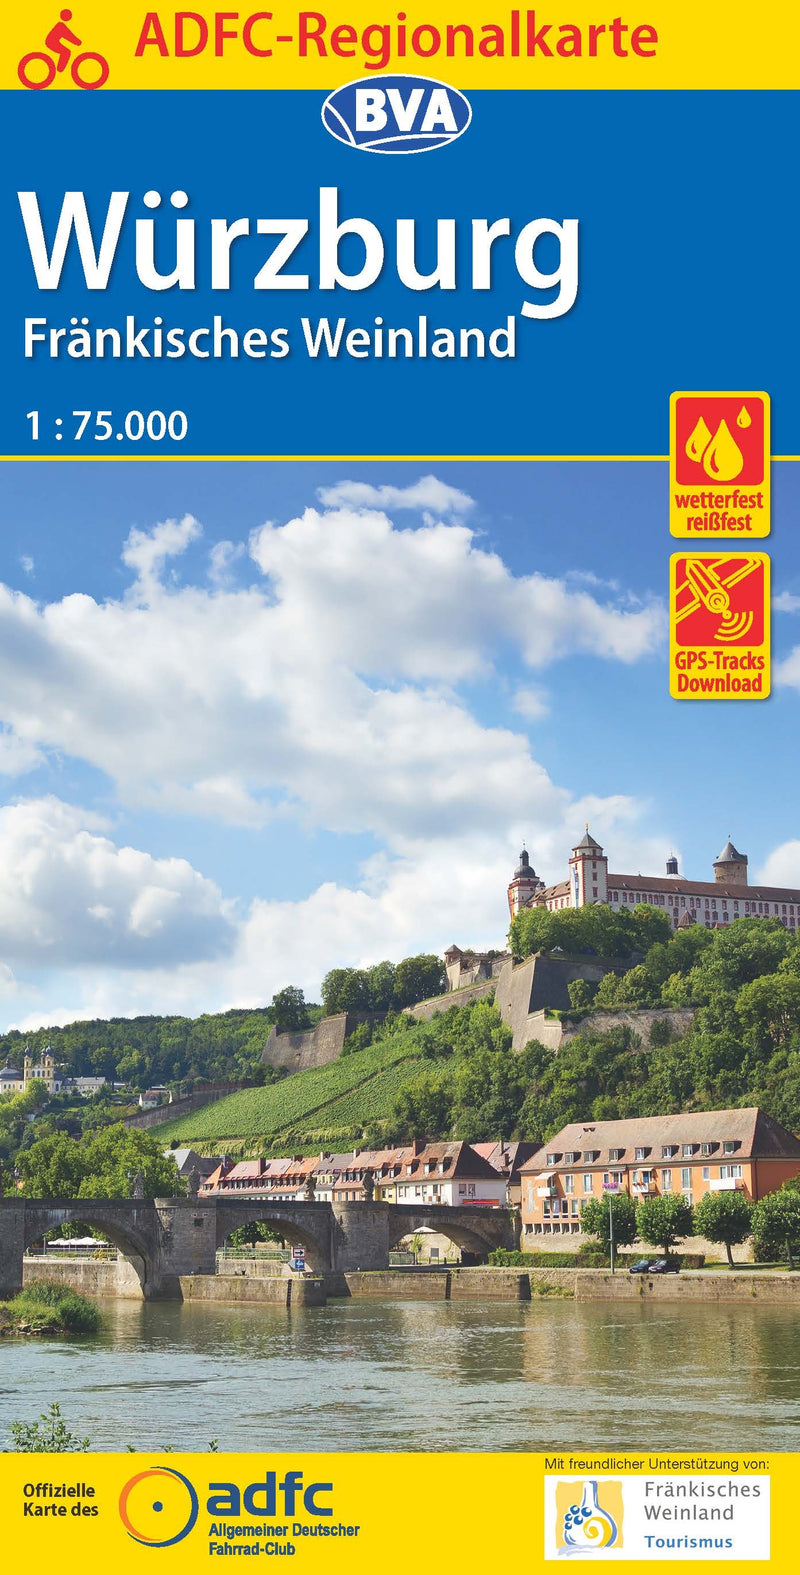 ADFC Regionalkarte WÃ¼rzburg FrÃ¤nkisches Weinland 1:75.000 (2016)